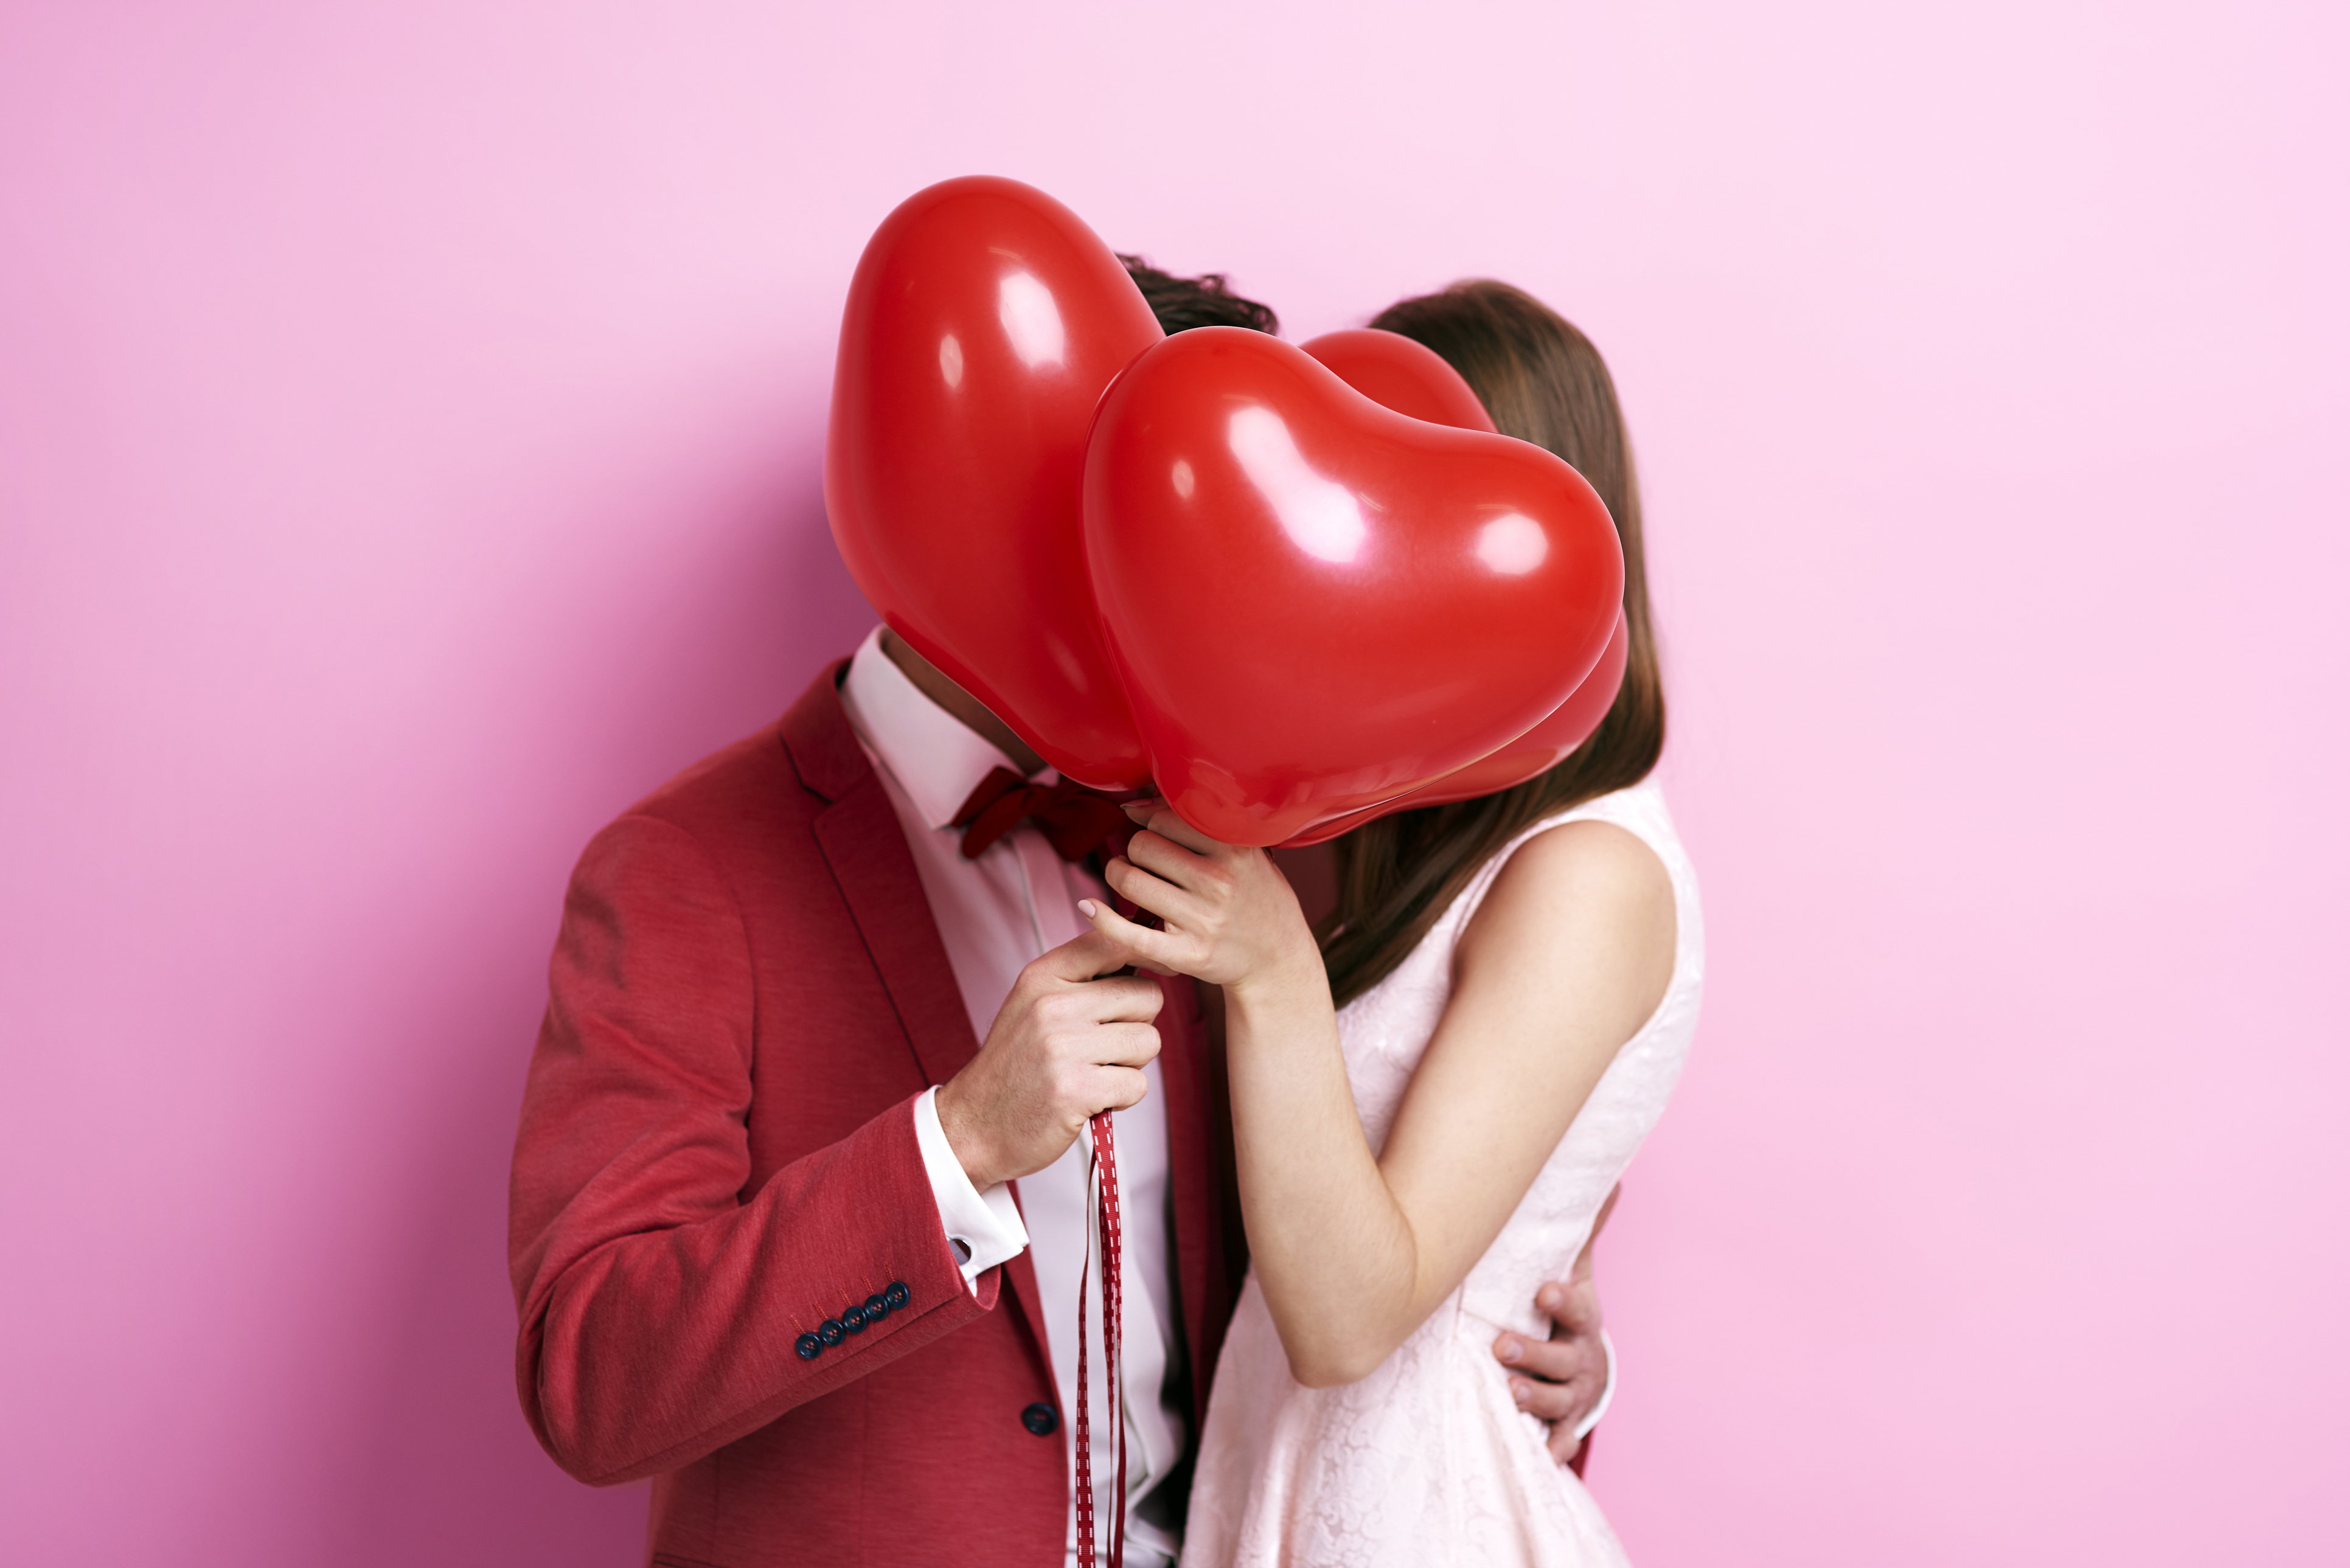 5 ознак, які допоможуть зрозуміти, що ви закохані  